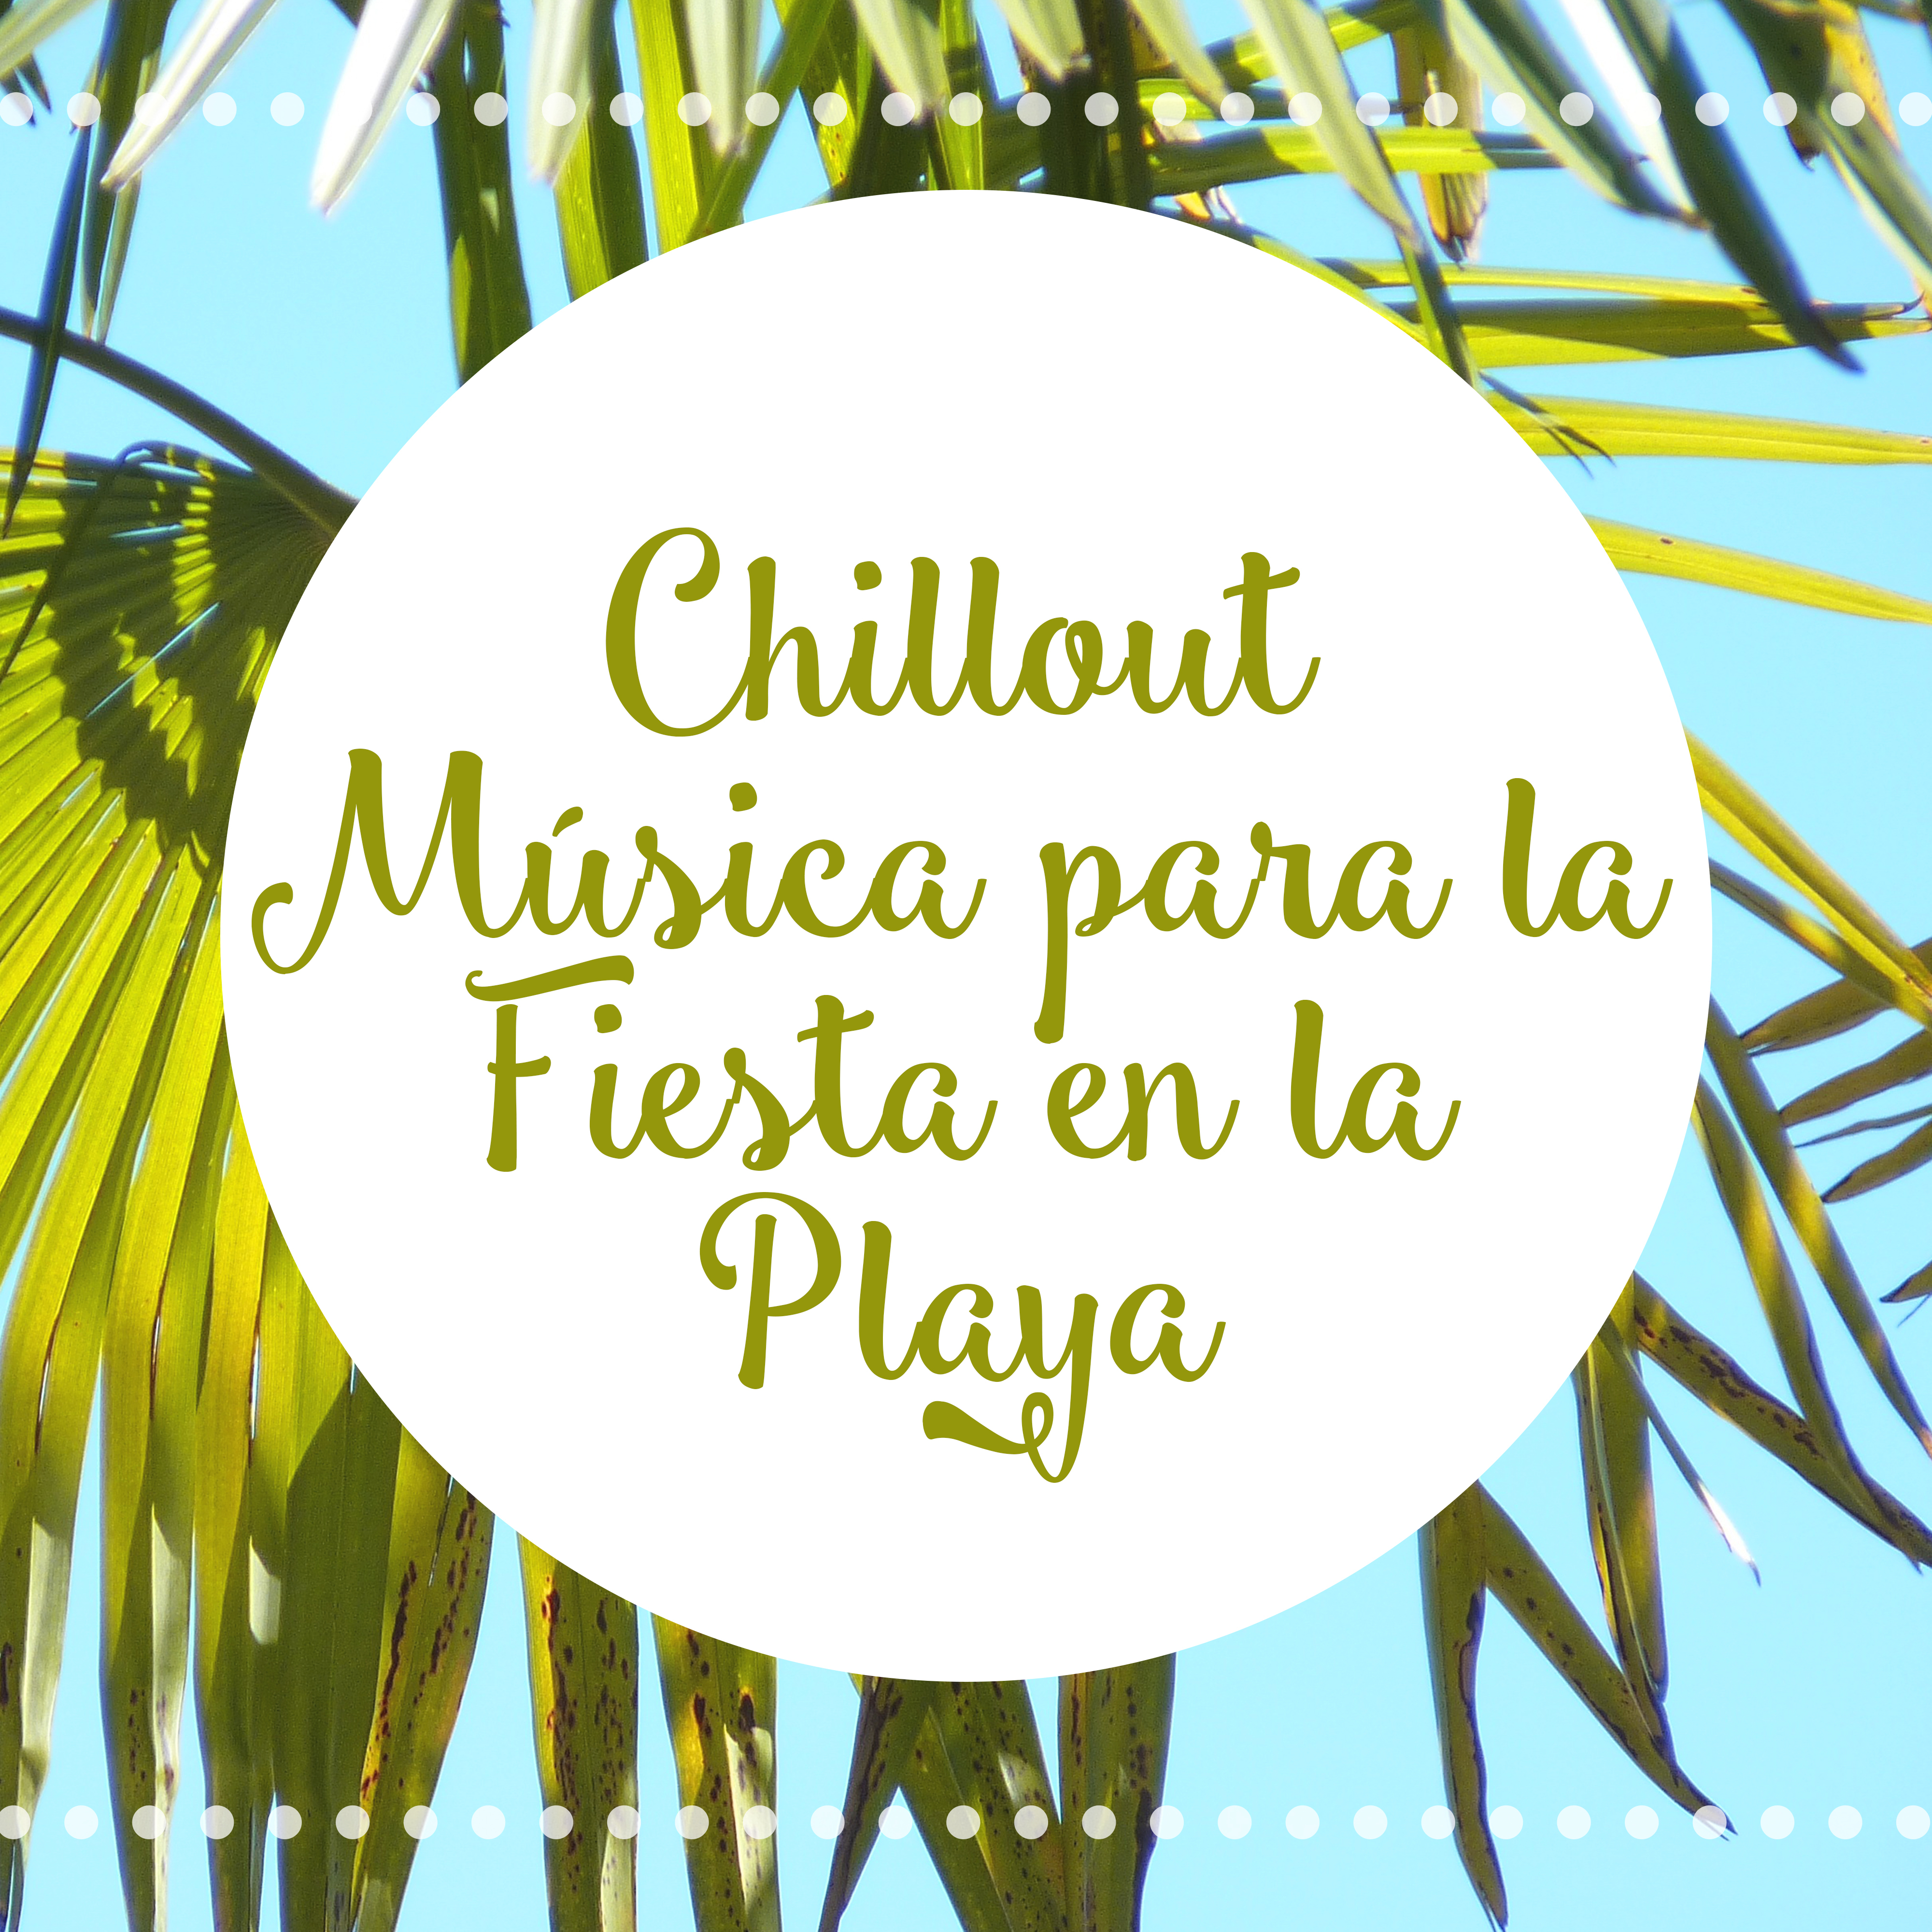 Chillout Música para la Fiesta en la Playa – Fiesta Nocturna, Musica Sexy, Playa de Ibiza, Verano, Música Electrónica, Relajación Profunda